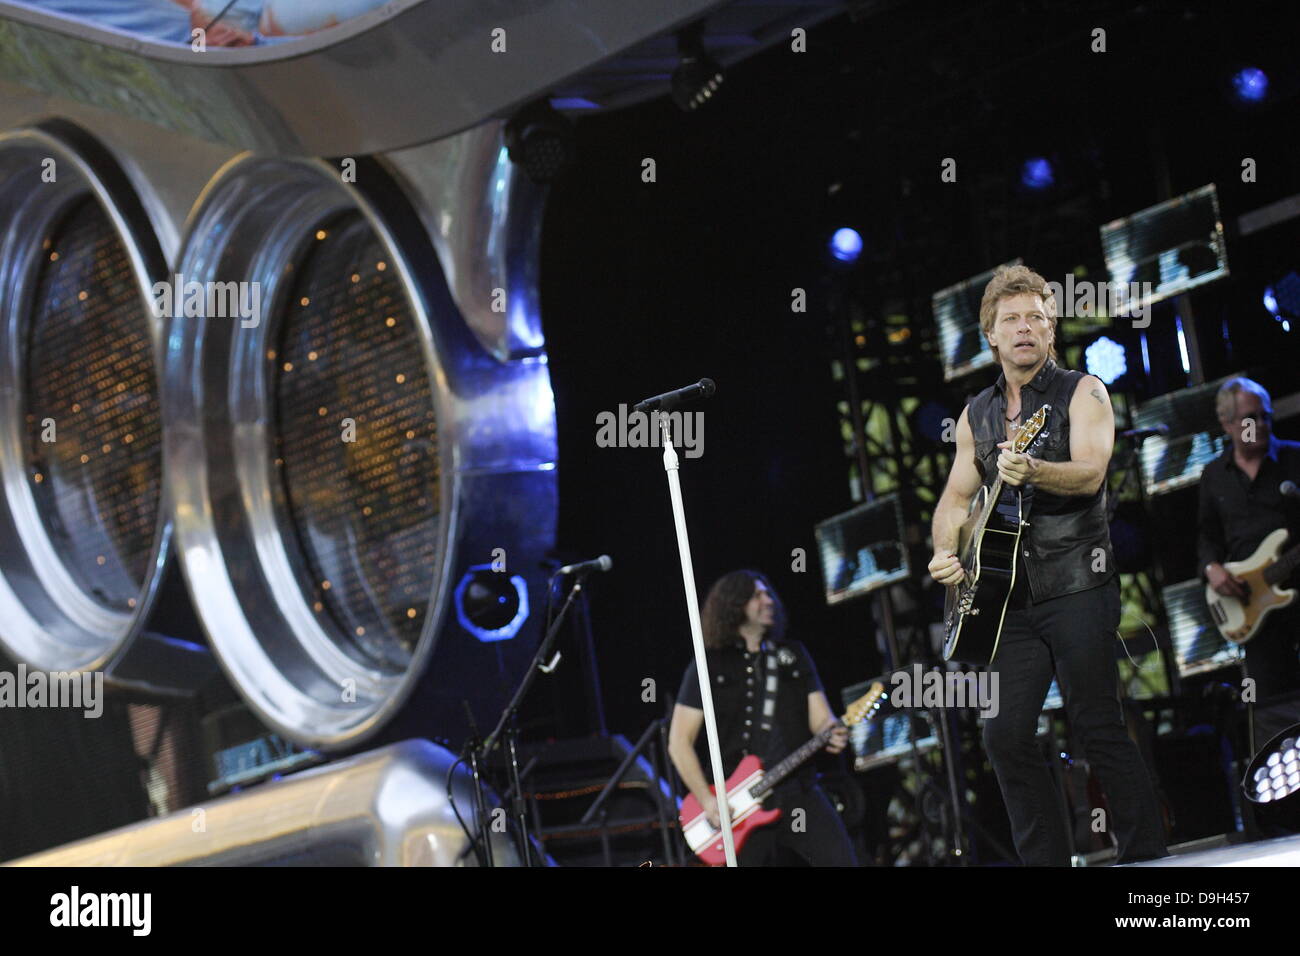 Danzig, Polen 19. Juni 2013 die Bon Jovi Band in Danzig im PGE Arena Stadion als Teil der Tour "Weil wir können tritt". Bildnachweis: Michal Fludra/Alamy Live-Nachrichten Stockfoto